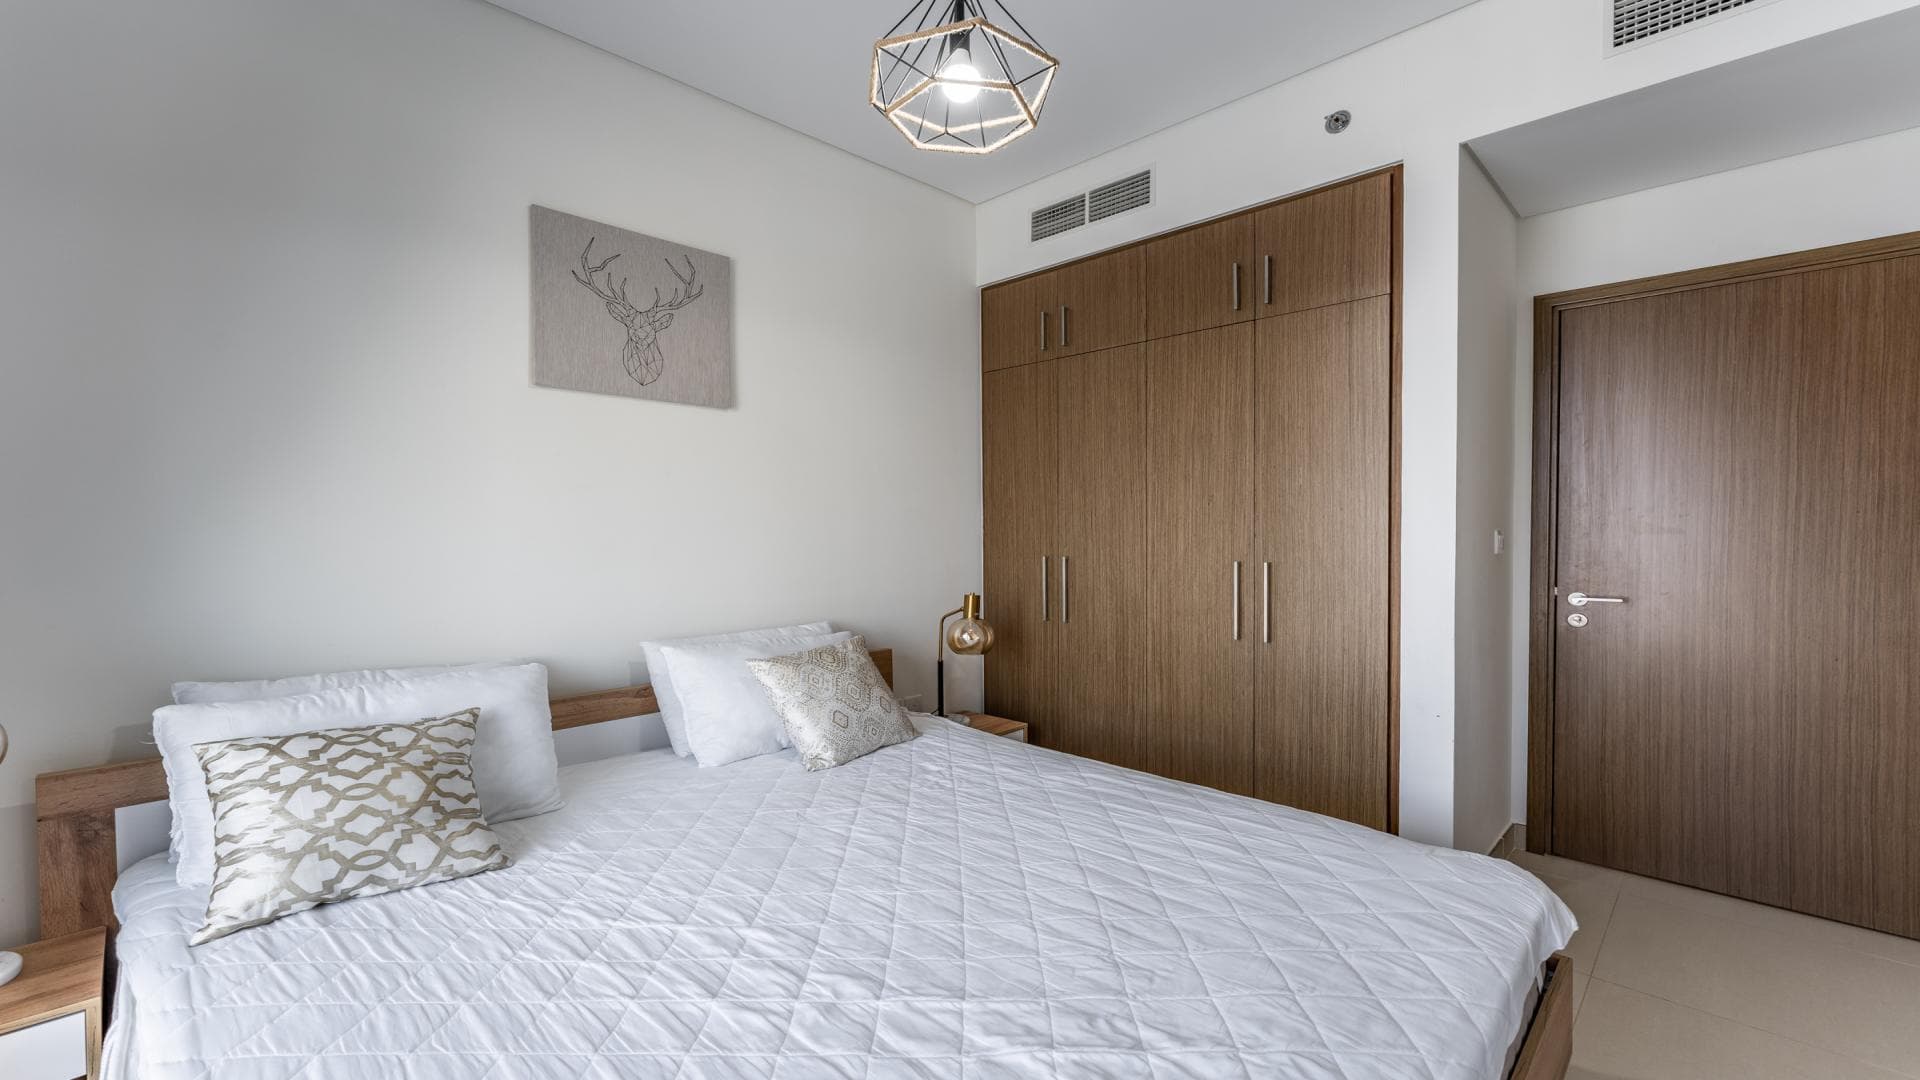 2 Bedroom Apartment For Rent Garden Homes Frond N Lp35556 94ca439c6fb6600.jpg